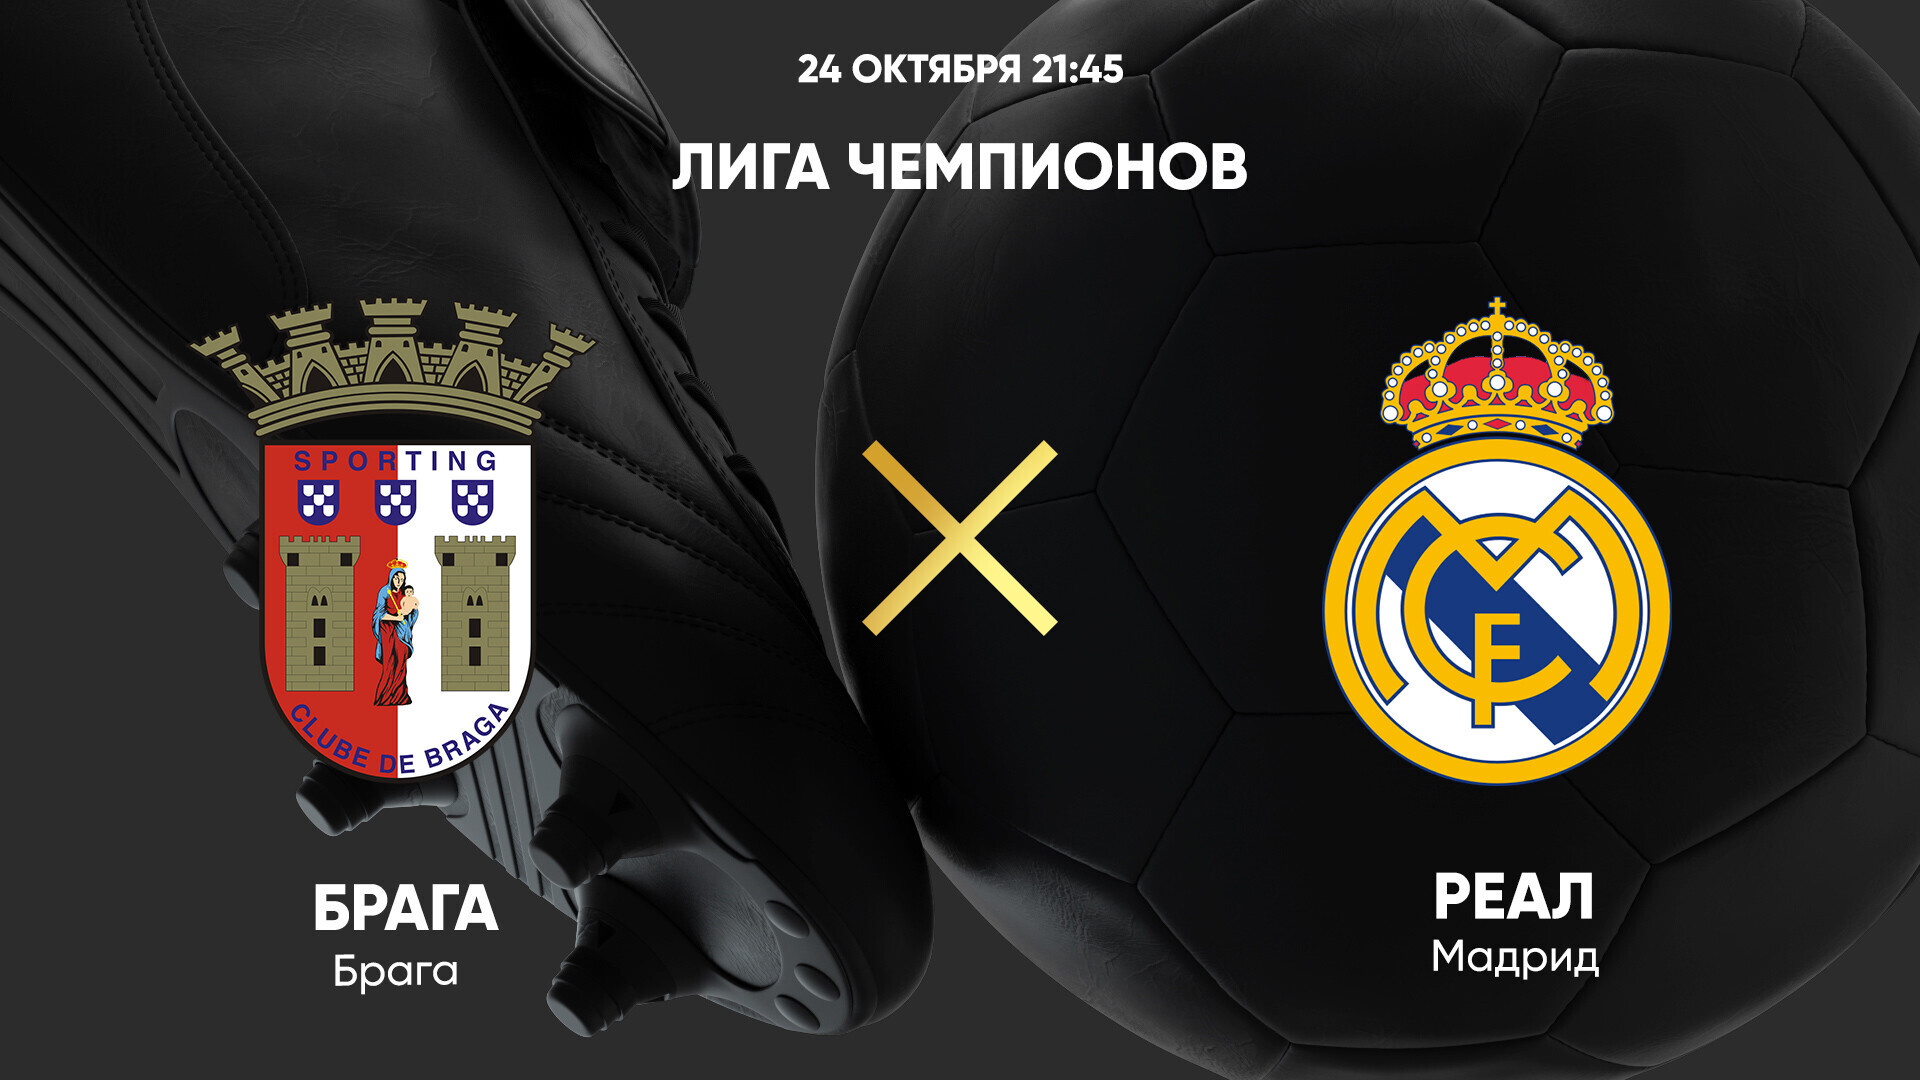 Брага - Реал Мадрид, 24 октября 2023 - смотреть онлайн Лигу чемпионов  2023/2024, прямая трансляция матча группового этапа